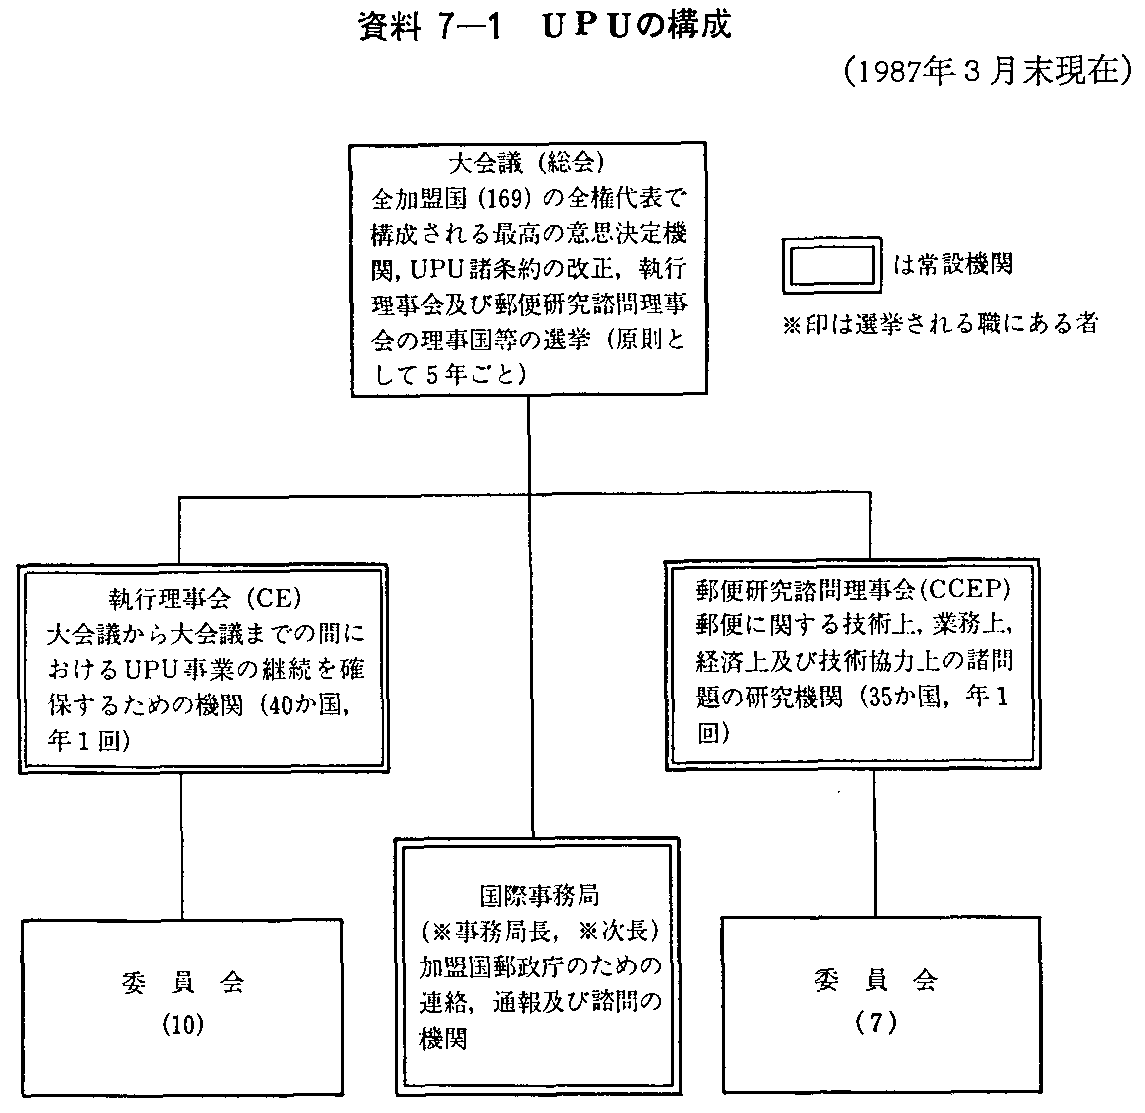 資料7-1 UPUの構成(1987年3月末現在)